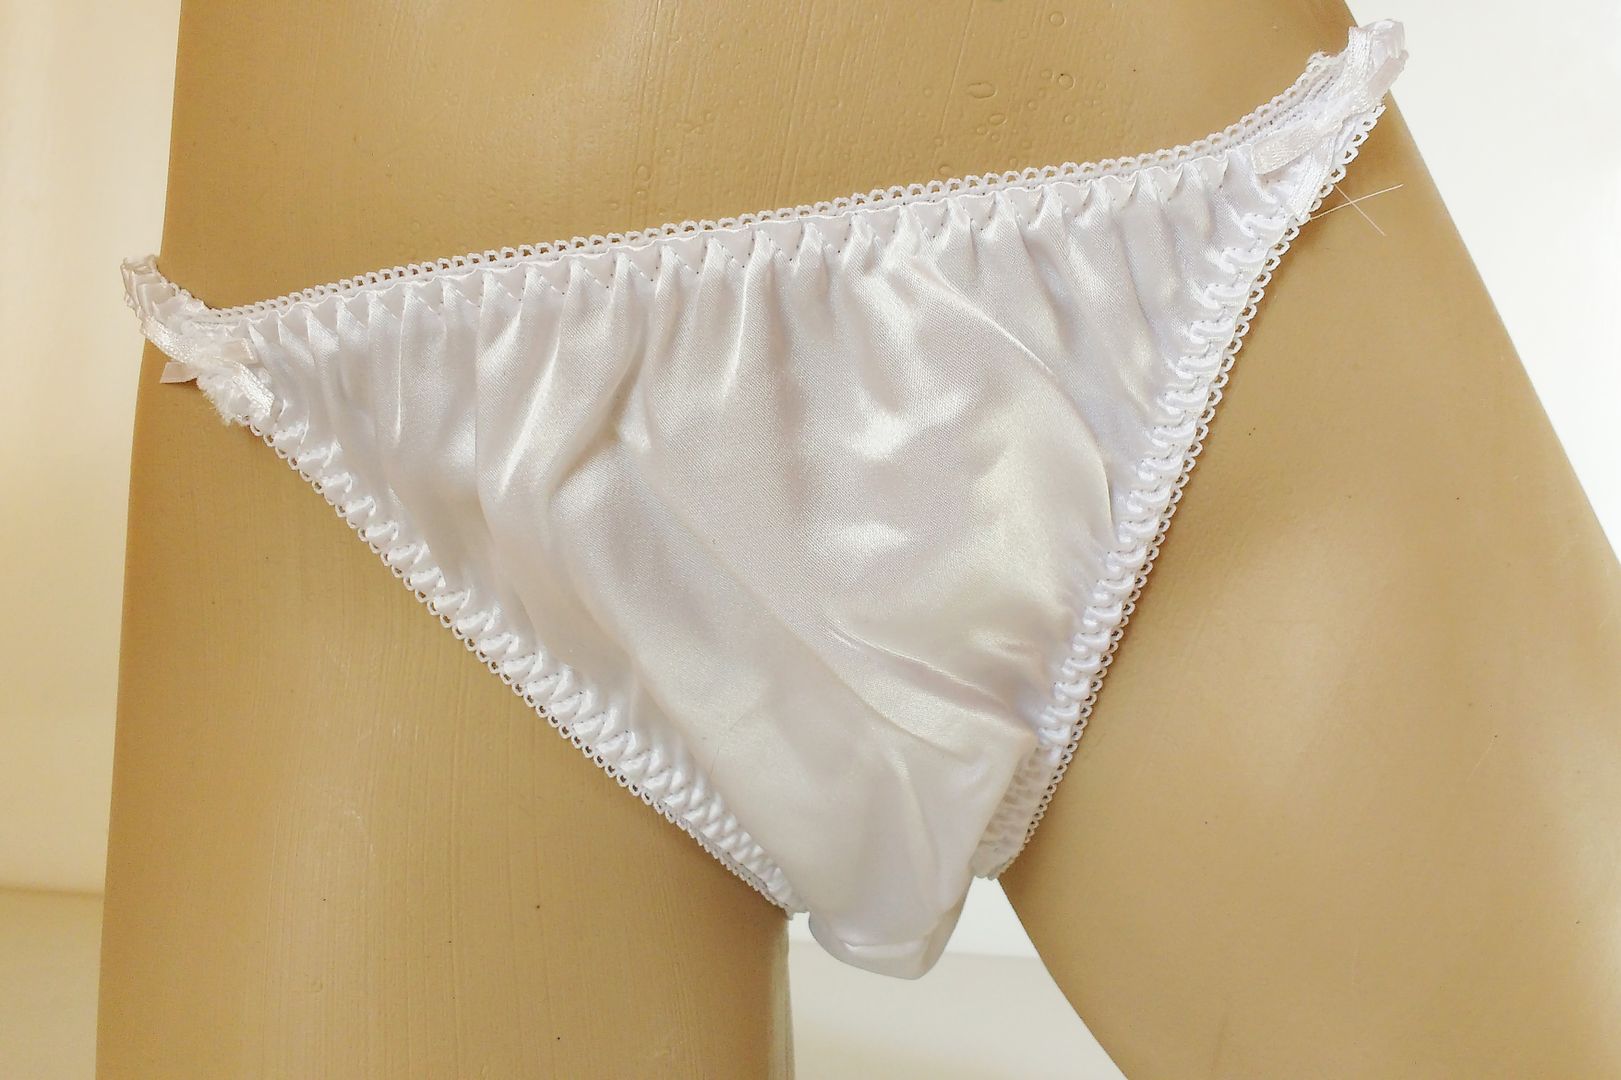 Silky Virgin White Satin String Bikini Panties Tanga Knickers Medium 12 14 Ebay